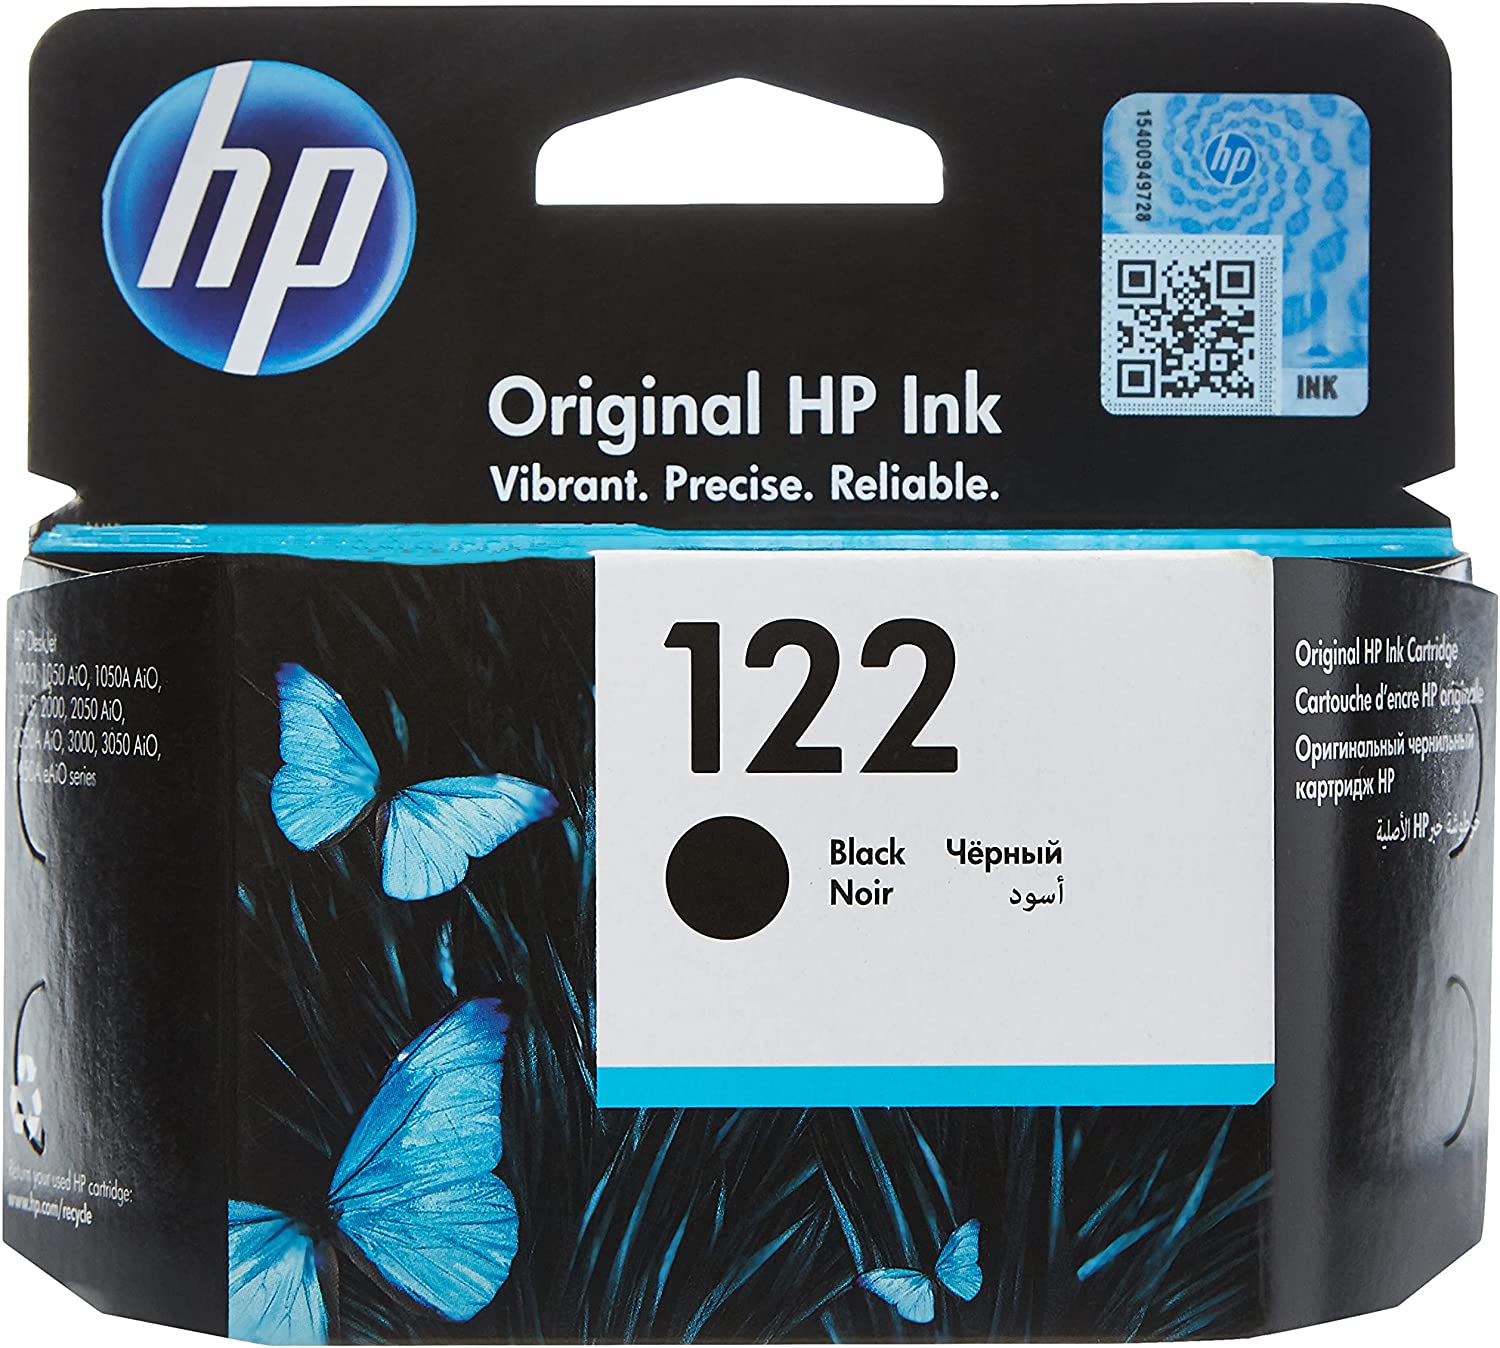 HP 122 BLACK INK CARTRIDGE